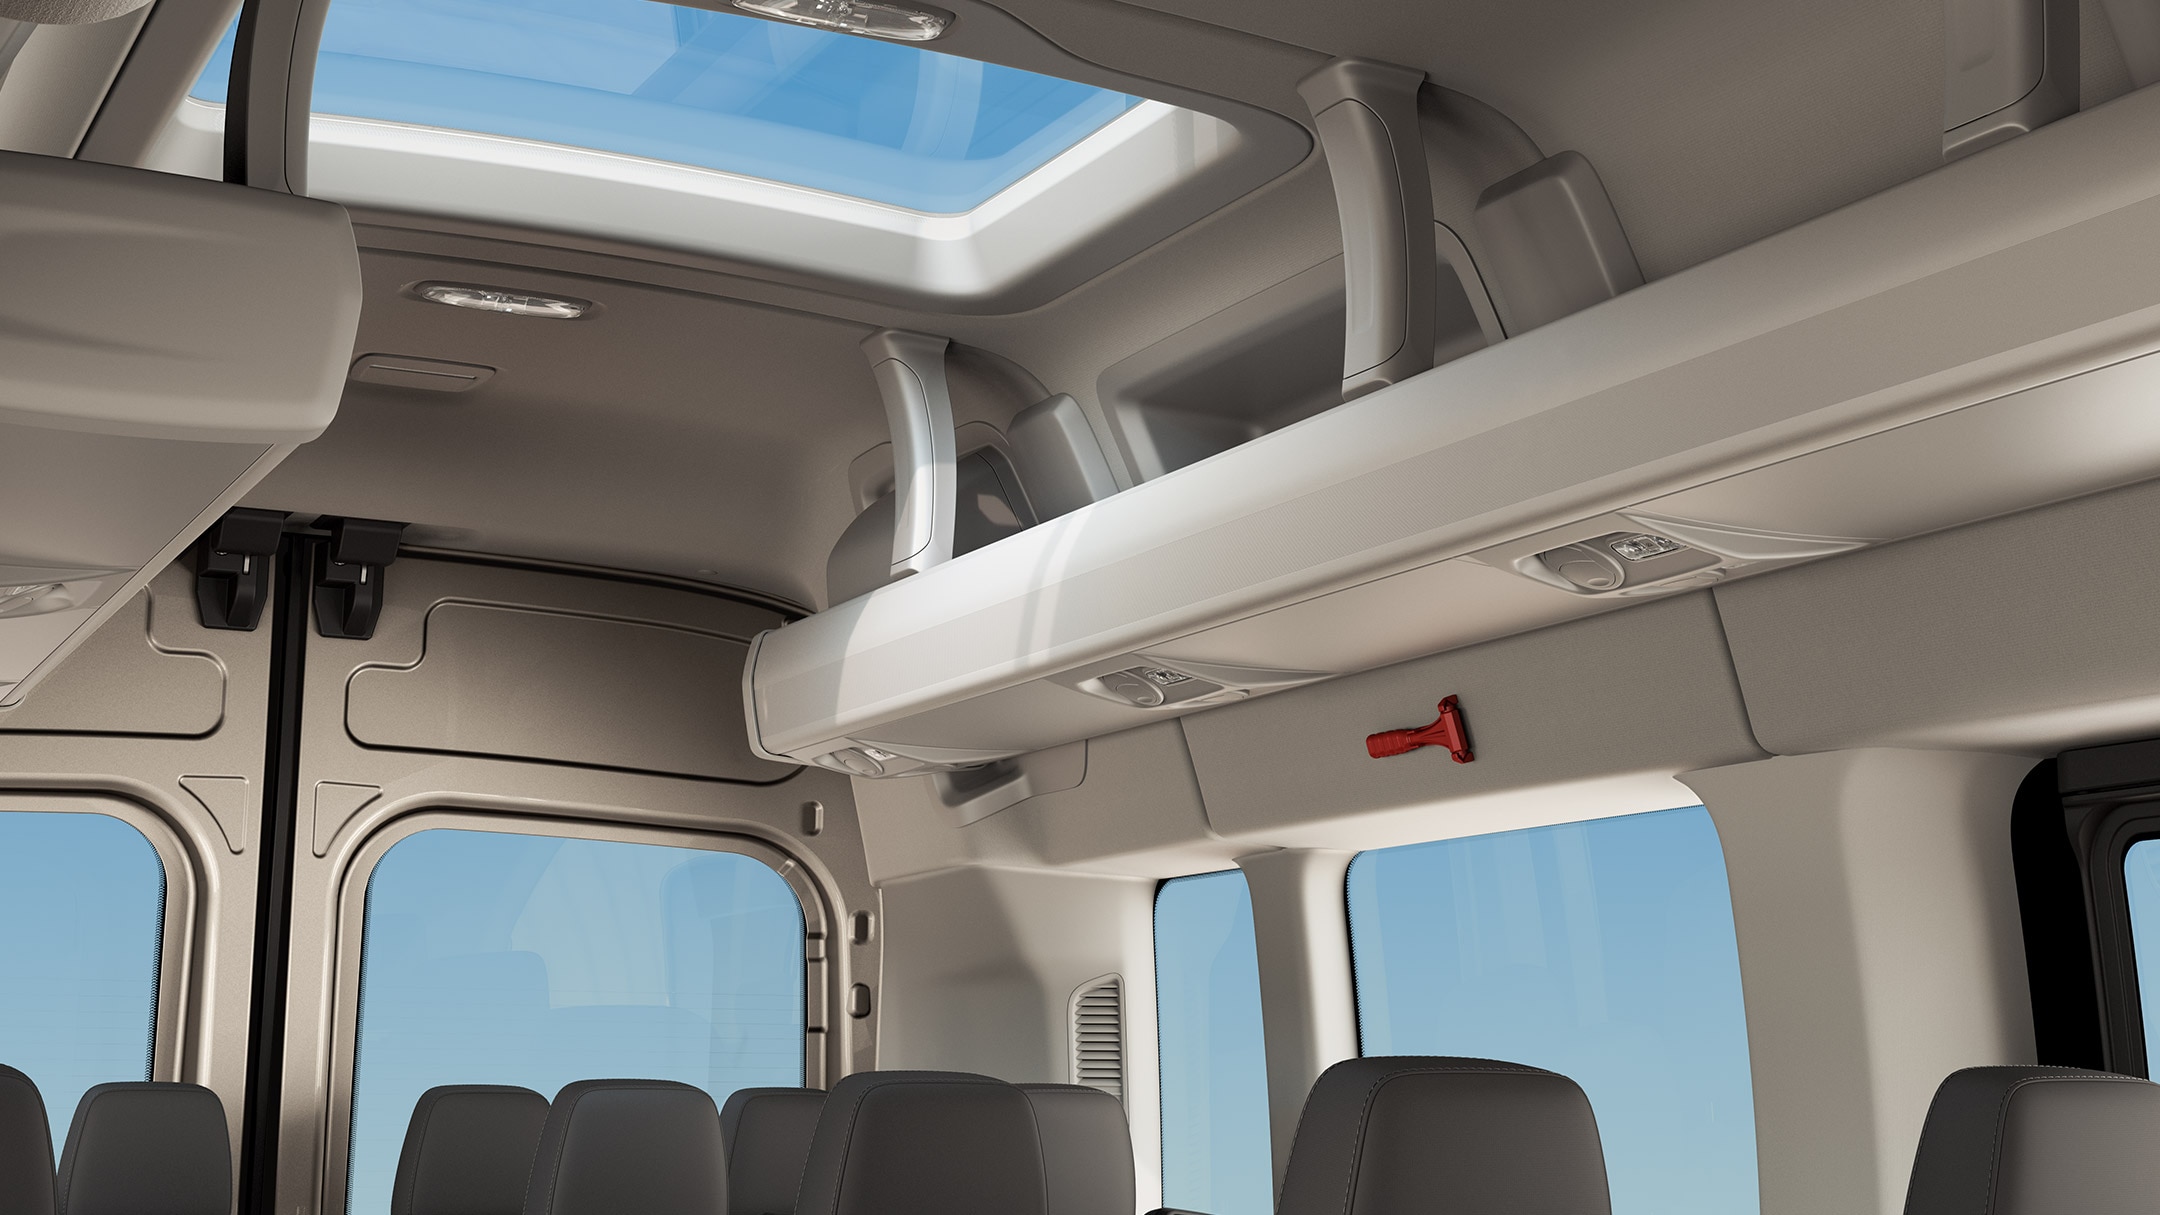 Ford Transit Bus Innenraum. Ausschnitt des Fahrgastbereichs mit Dachfenster und Ablagemöglichkeit